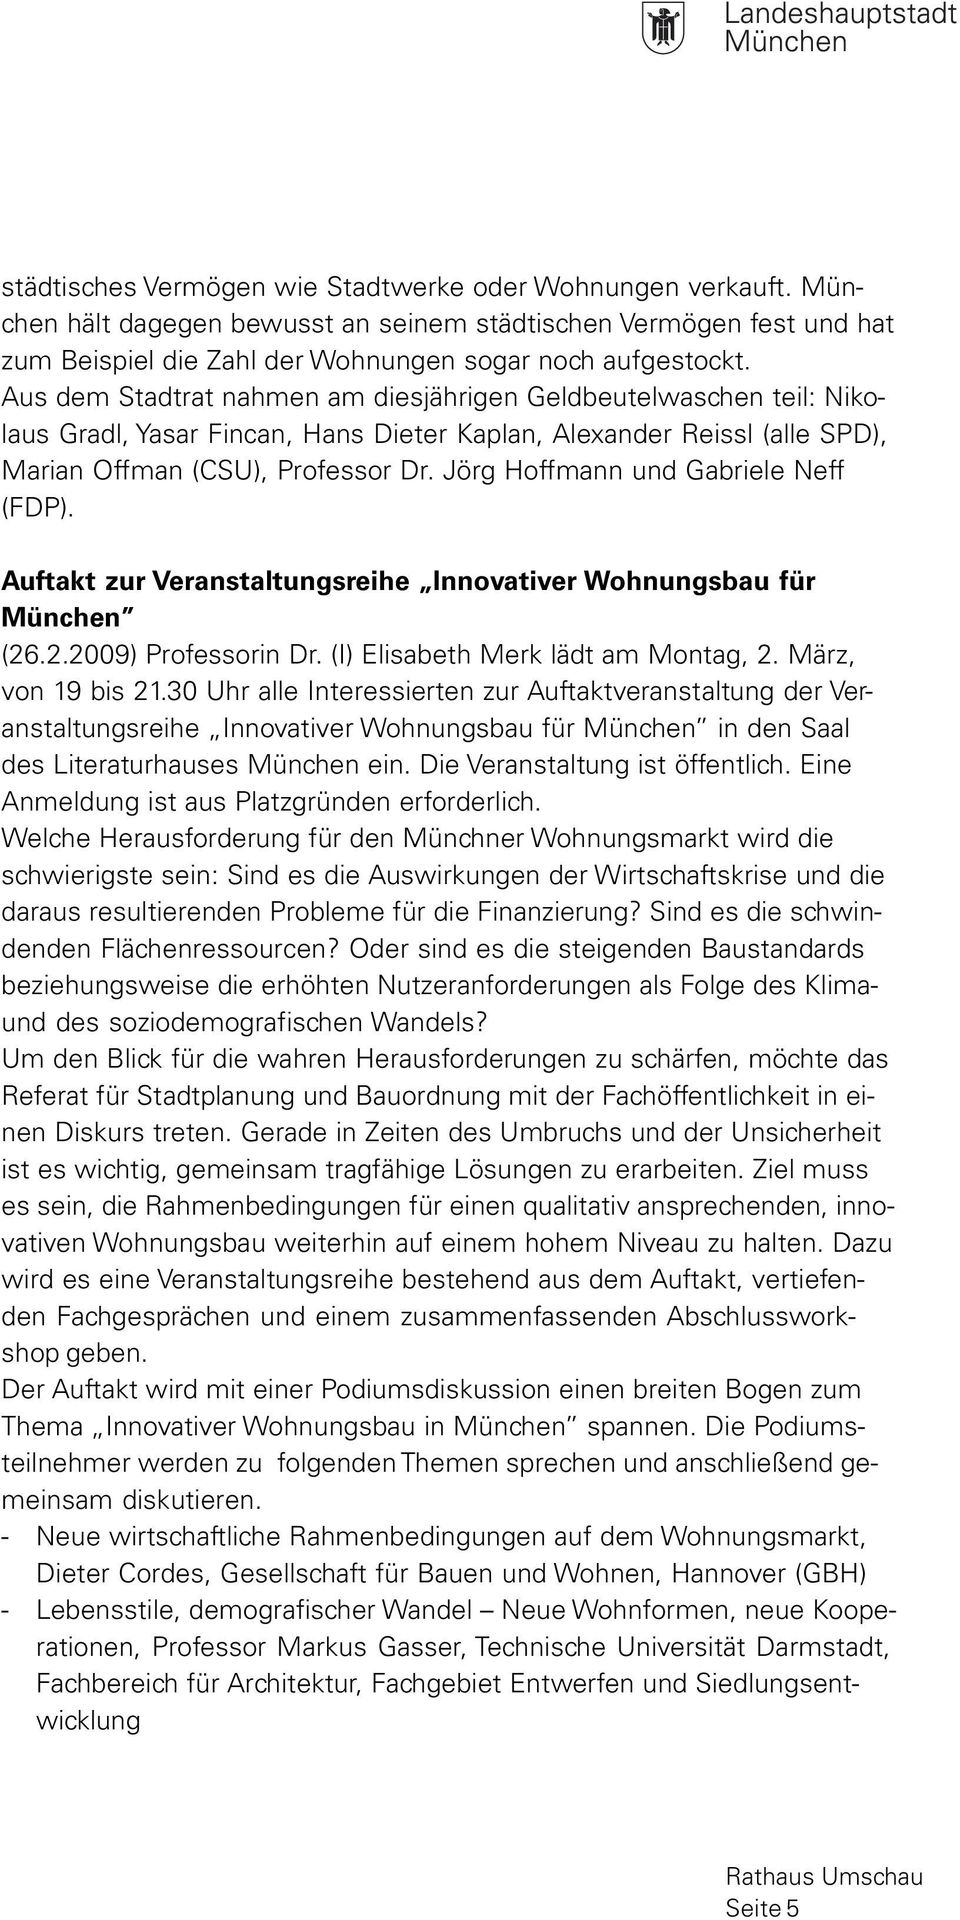 Jörg Hoffmann und Gabriele Neff (FDP). Auftakt zur Veranstaltungsreihe Innovativer Wohnungsbau für München (26.2.2009) Professorin Dr. (I) Elisabeth Merk lädt am Montag, 2. März, von 19 bis 21.